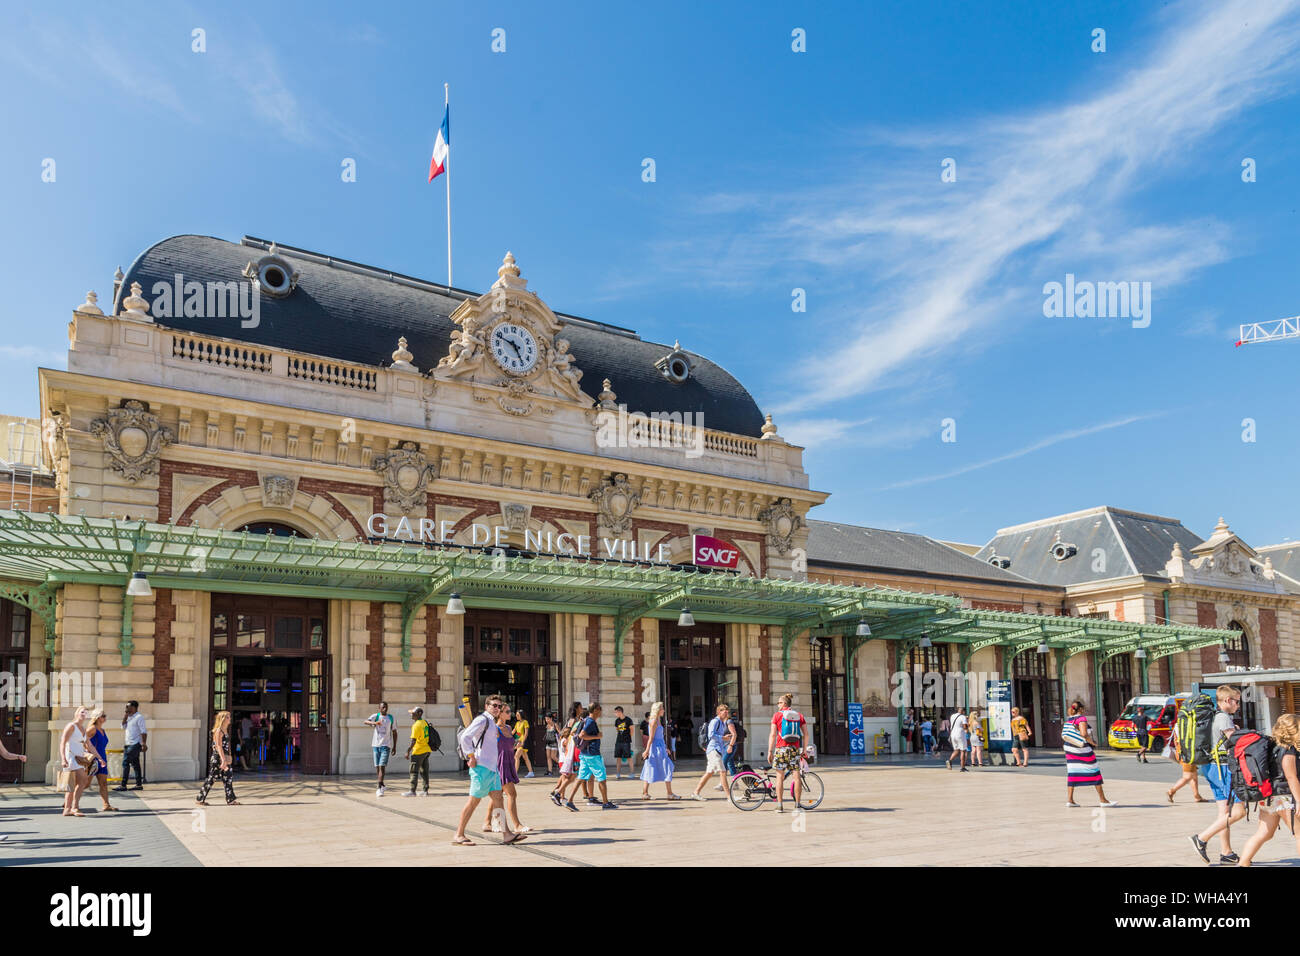 La gare de Nice à Nice, Alpes Maritimes, Côte d'Azur, French Riviera, Provence, France, Europe, Méditerranée Banque D'Images